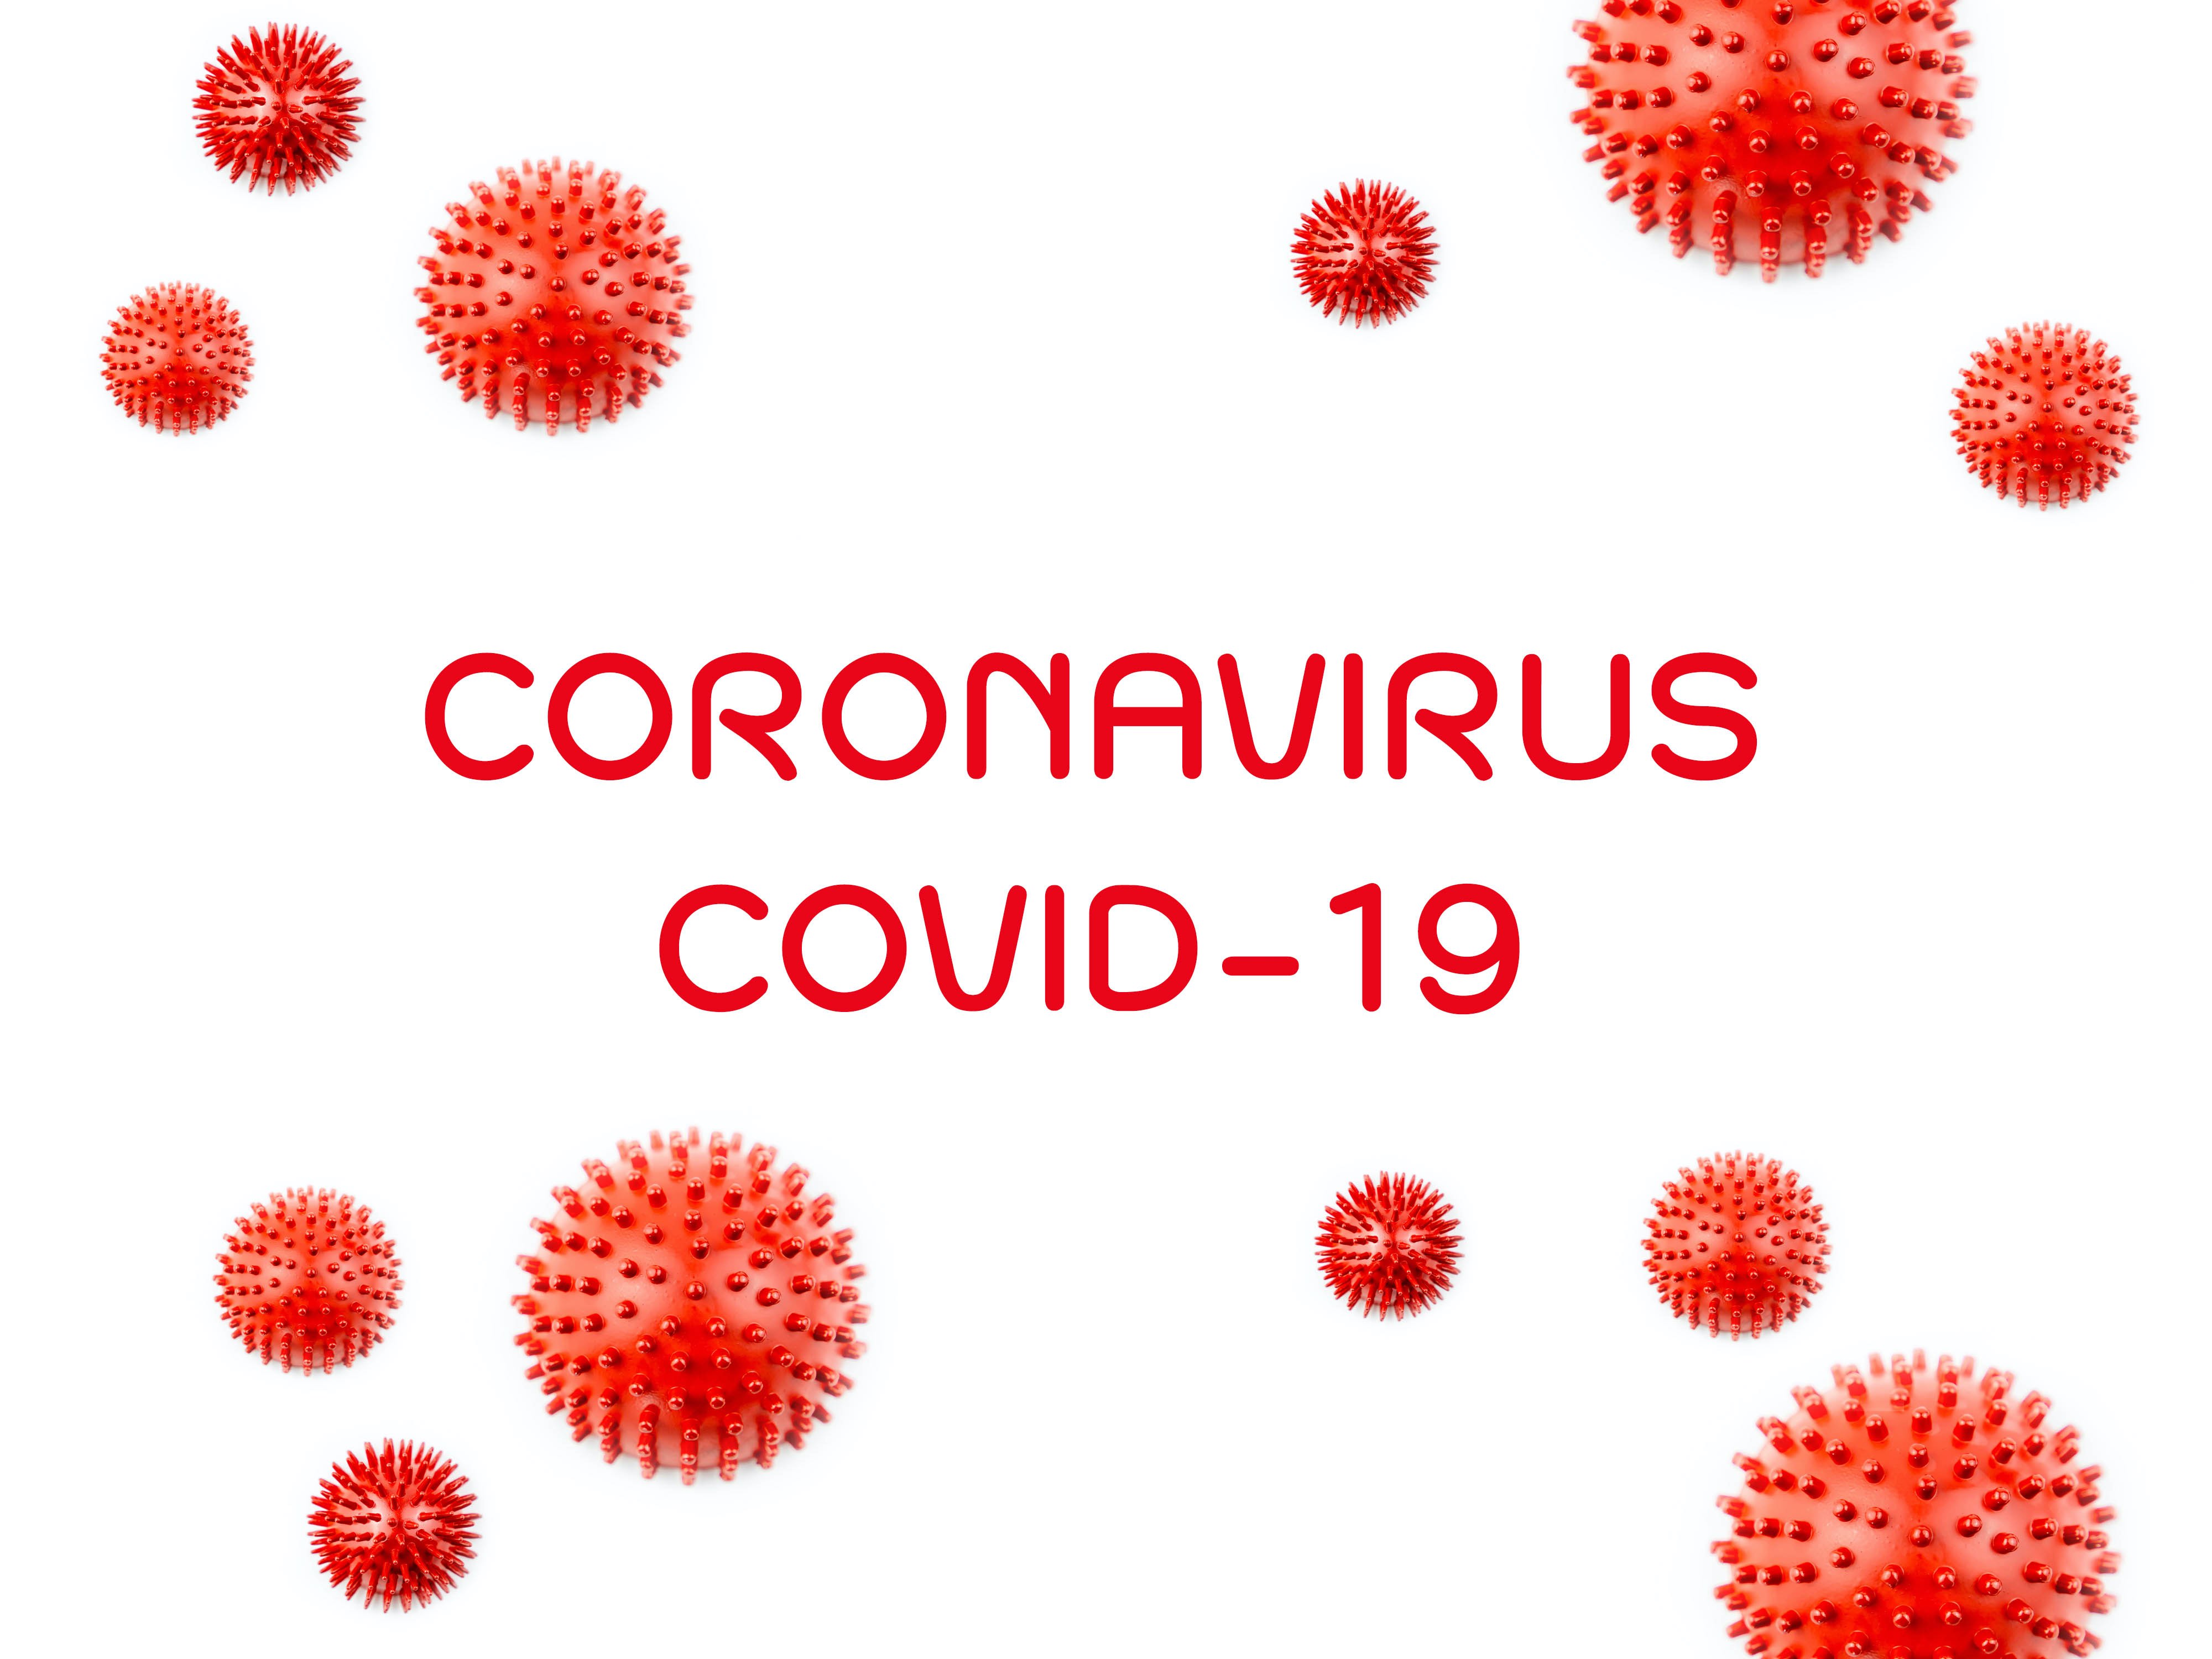 Coronavirus awareness course